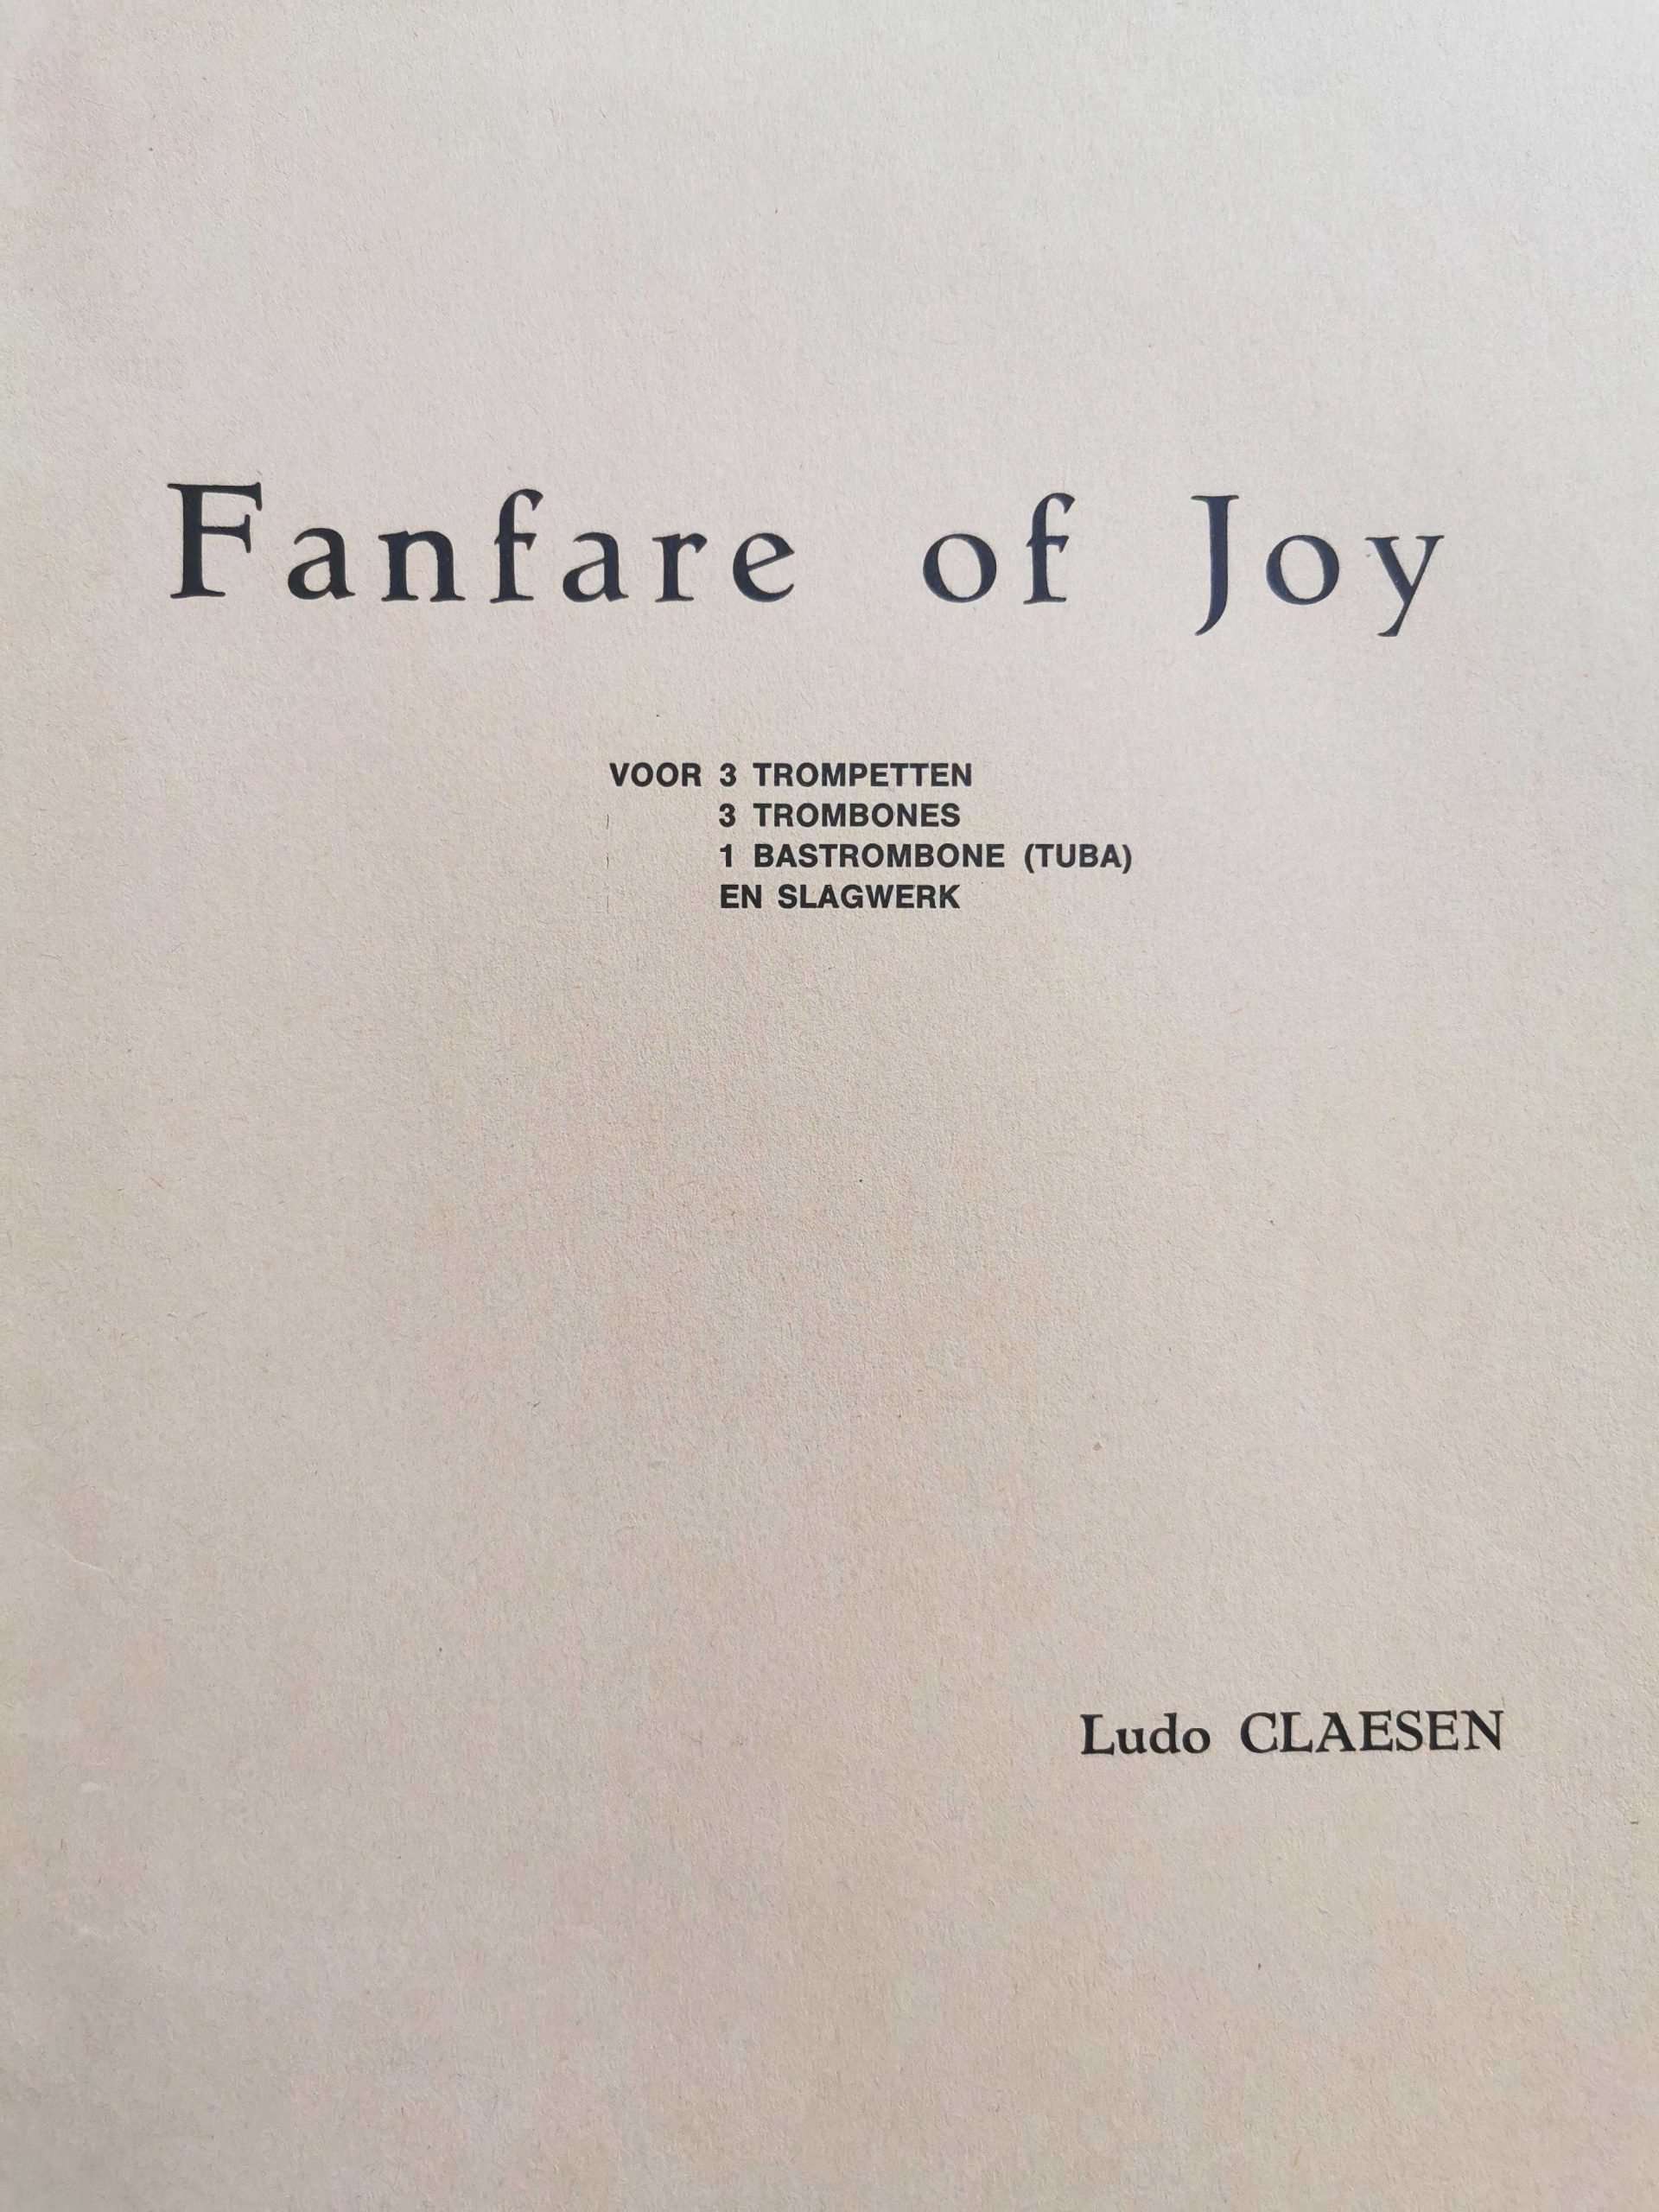 Fanfare of Joy by Ludo Claesen